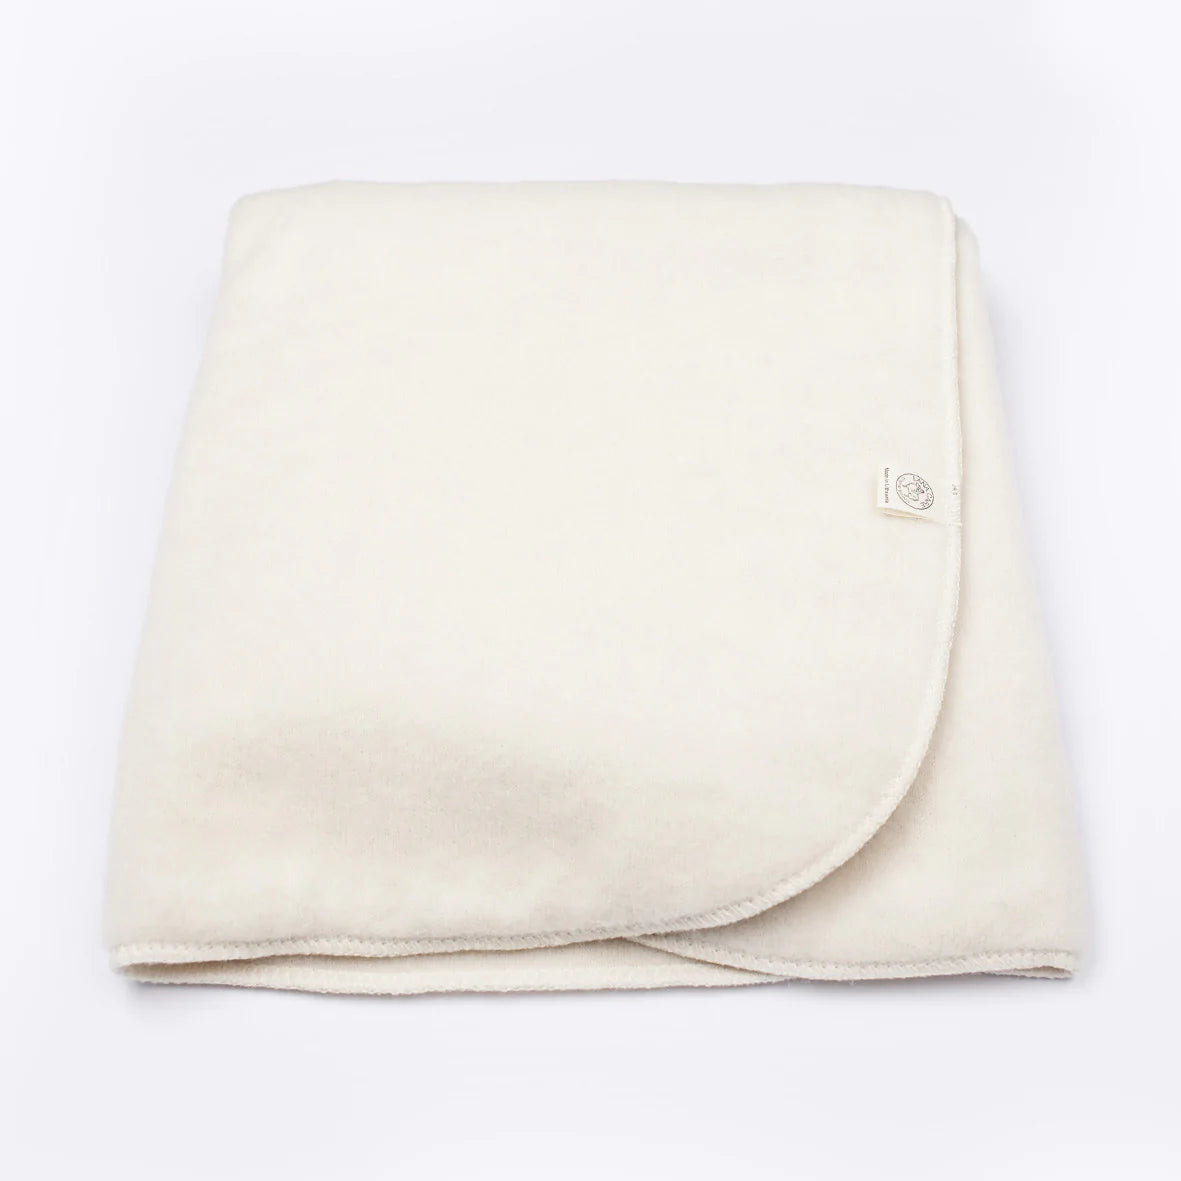 OUTLET LANACare "Toddler" Blanket in Organic Merino Wool